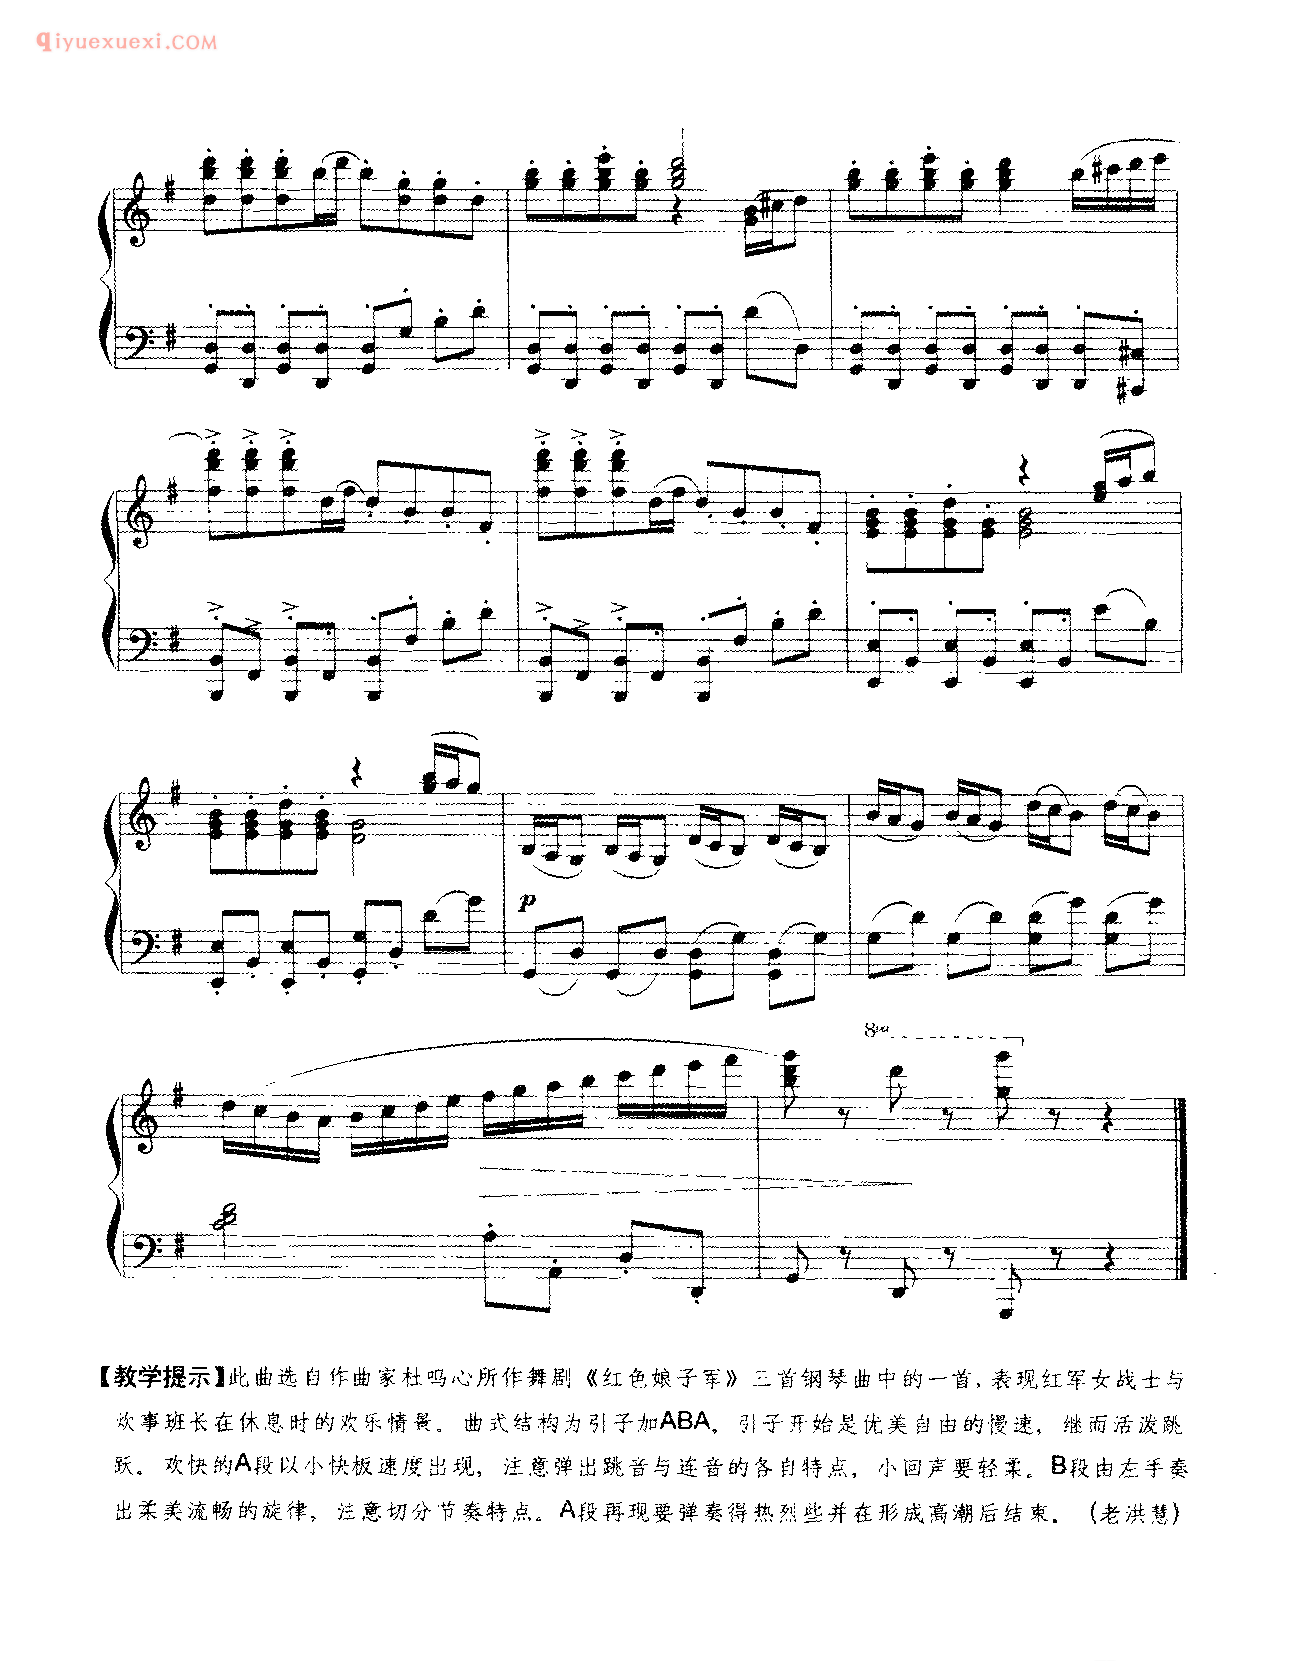 中国钢琴乐曲谱_快乐的女战士_杜鸣心曲